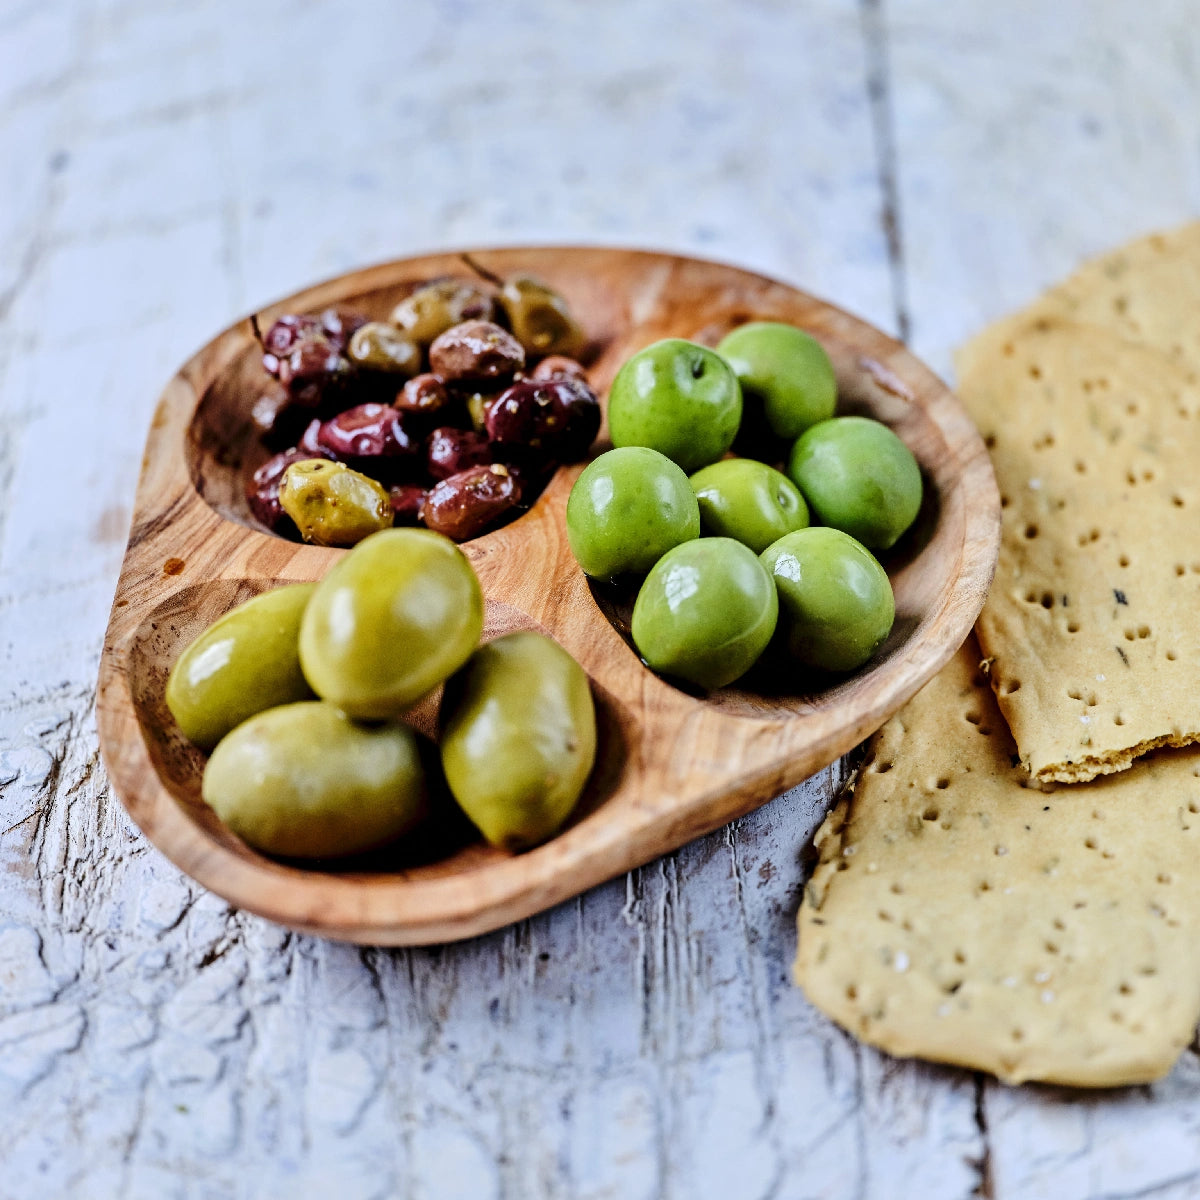 Nocellara del Belice, græske oliven i olie og krydderier og Bella di Spagna oliven fra Oliviers & Co